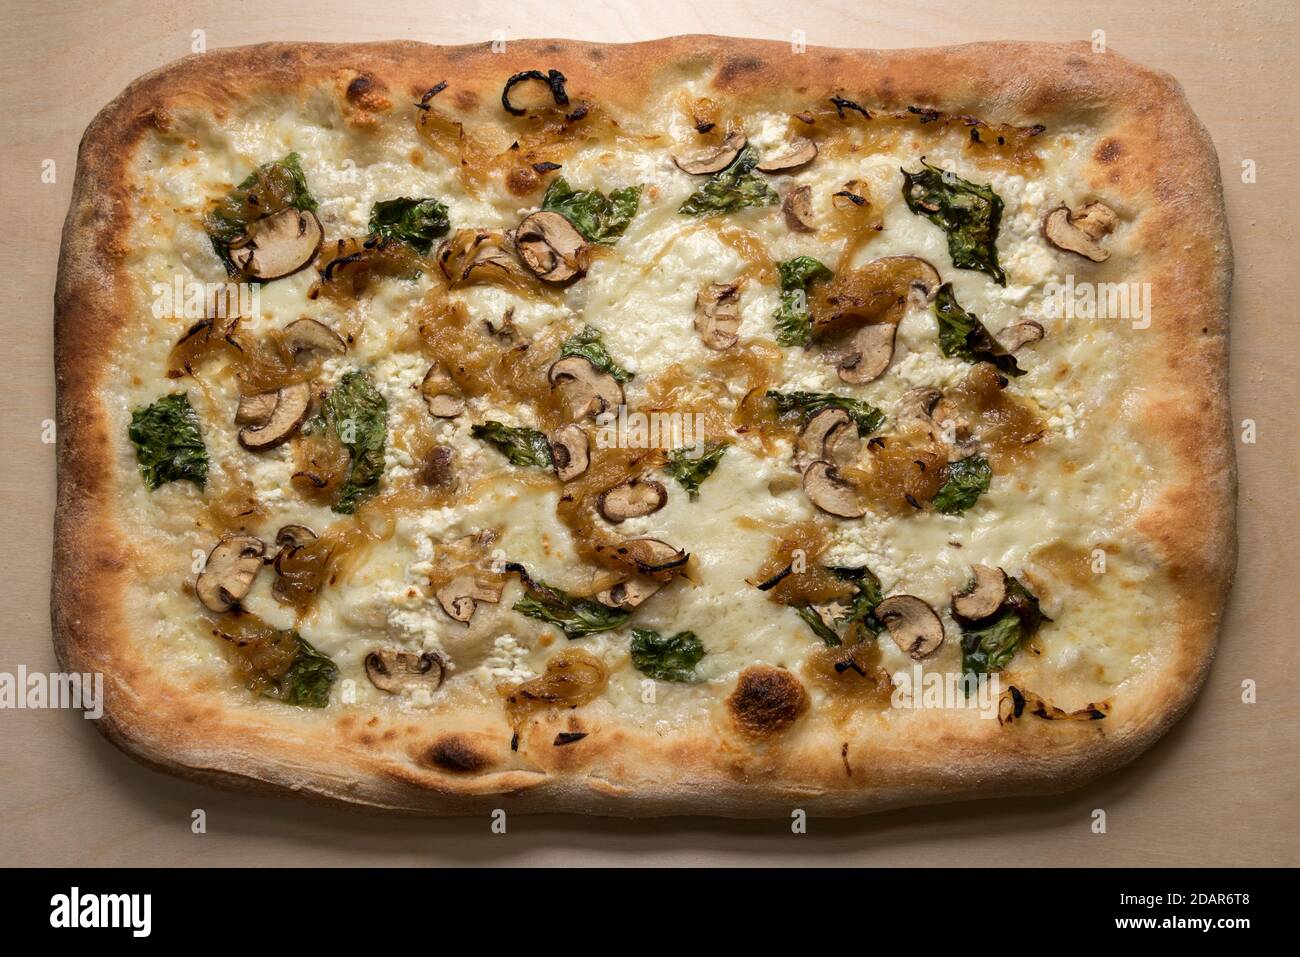 Pizza italiana quadrata con funghi, mozzarella, cipolle cotte e foglie di basilico, vista dall'alto su sfondo di legno prima del taglio Foto Stock